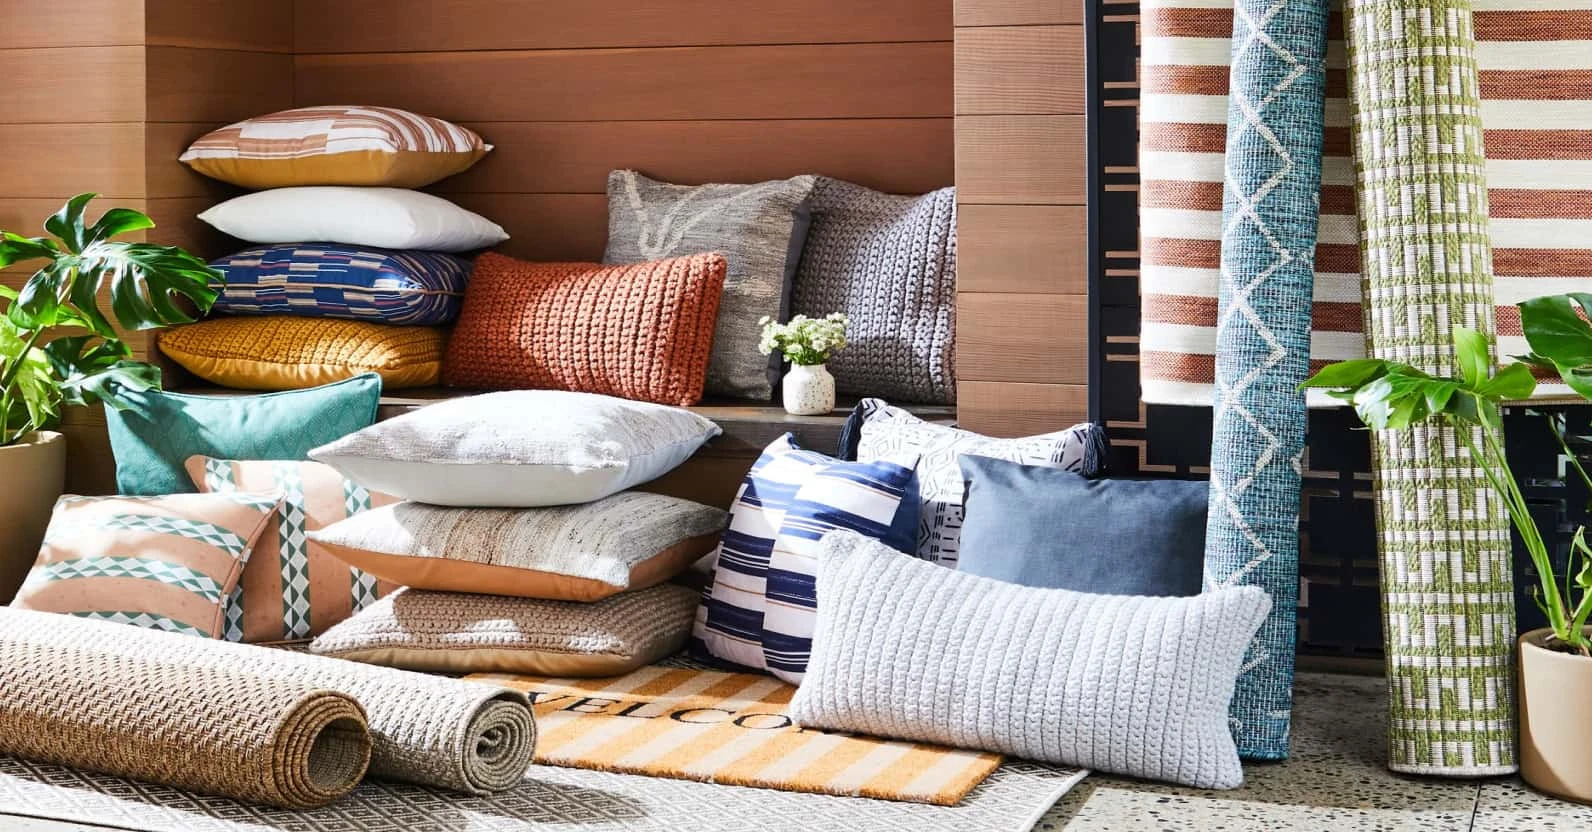 outdoor pillows